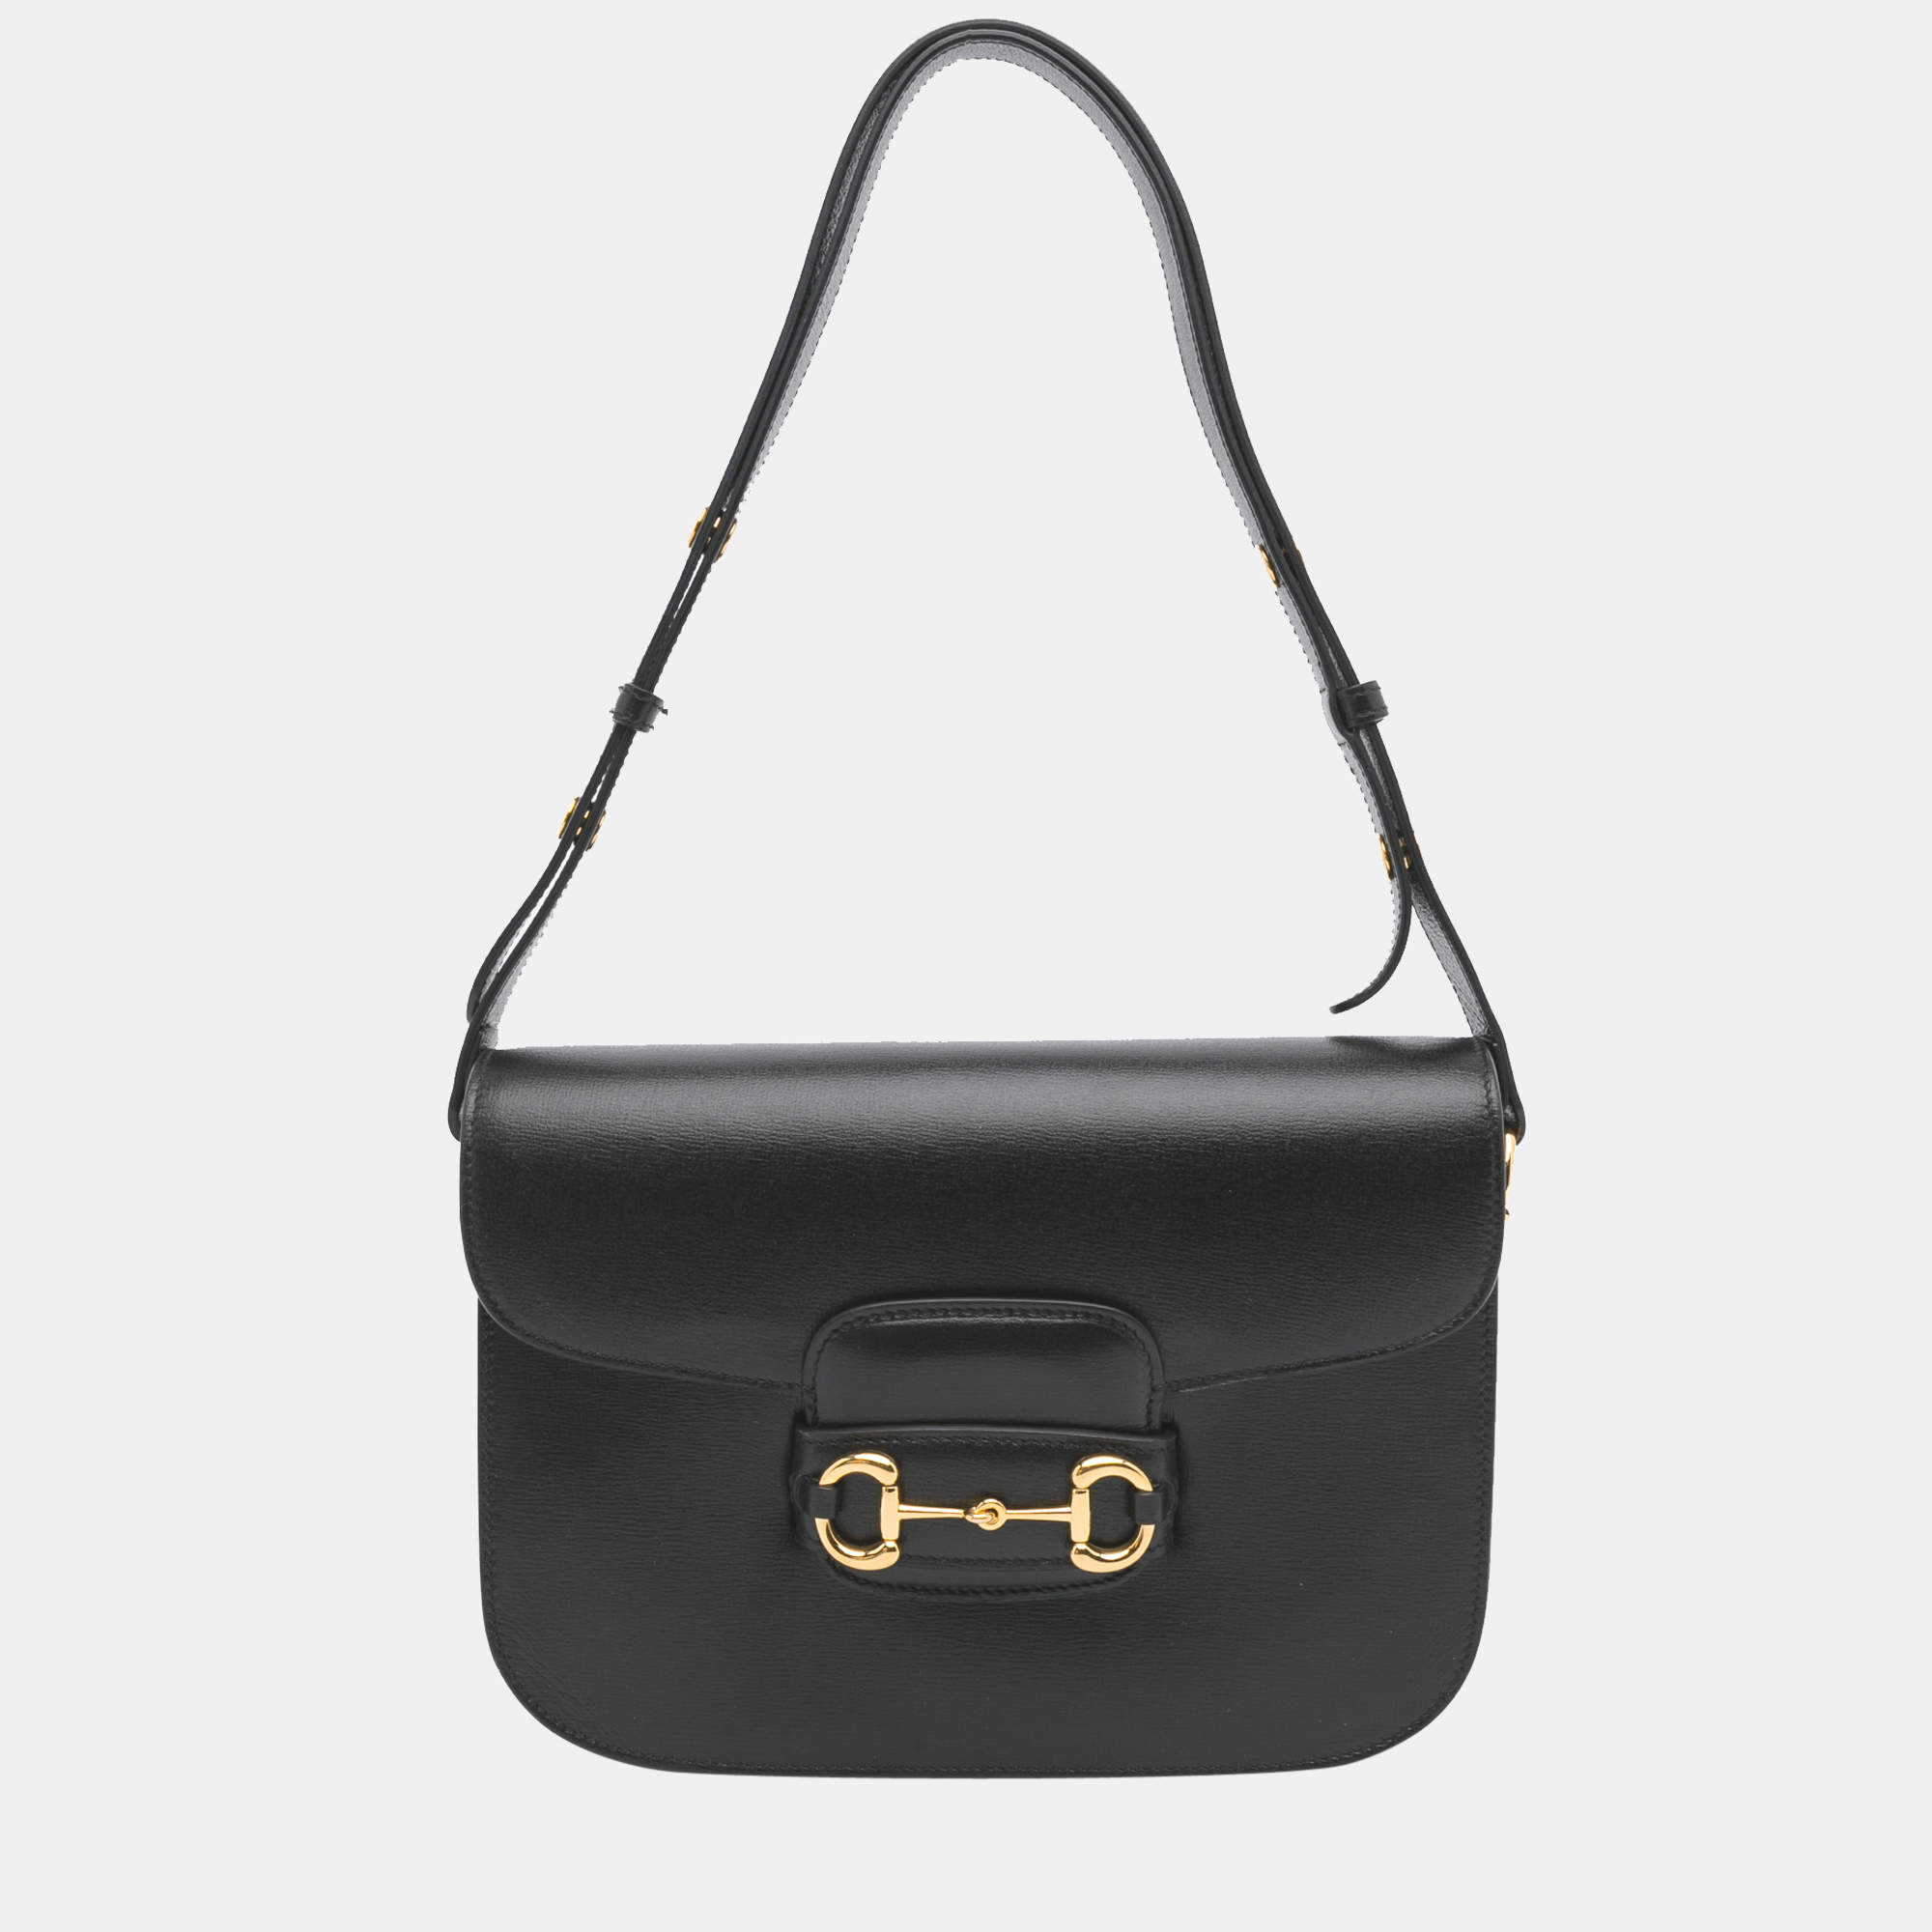 Gucci 1955 Horsebit Shoulder Bag